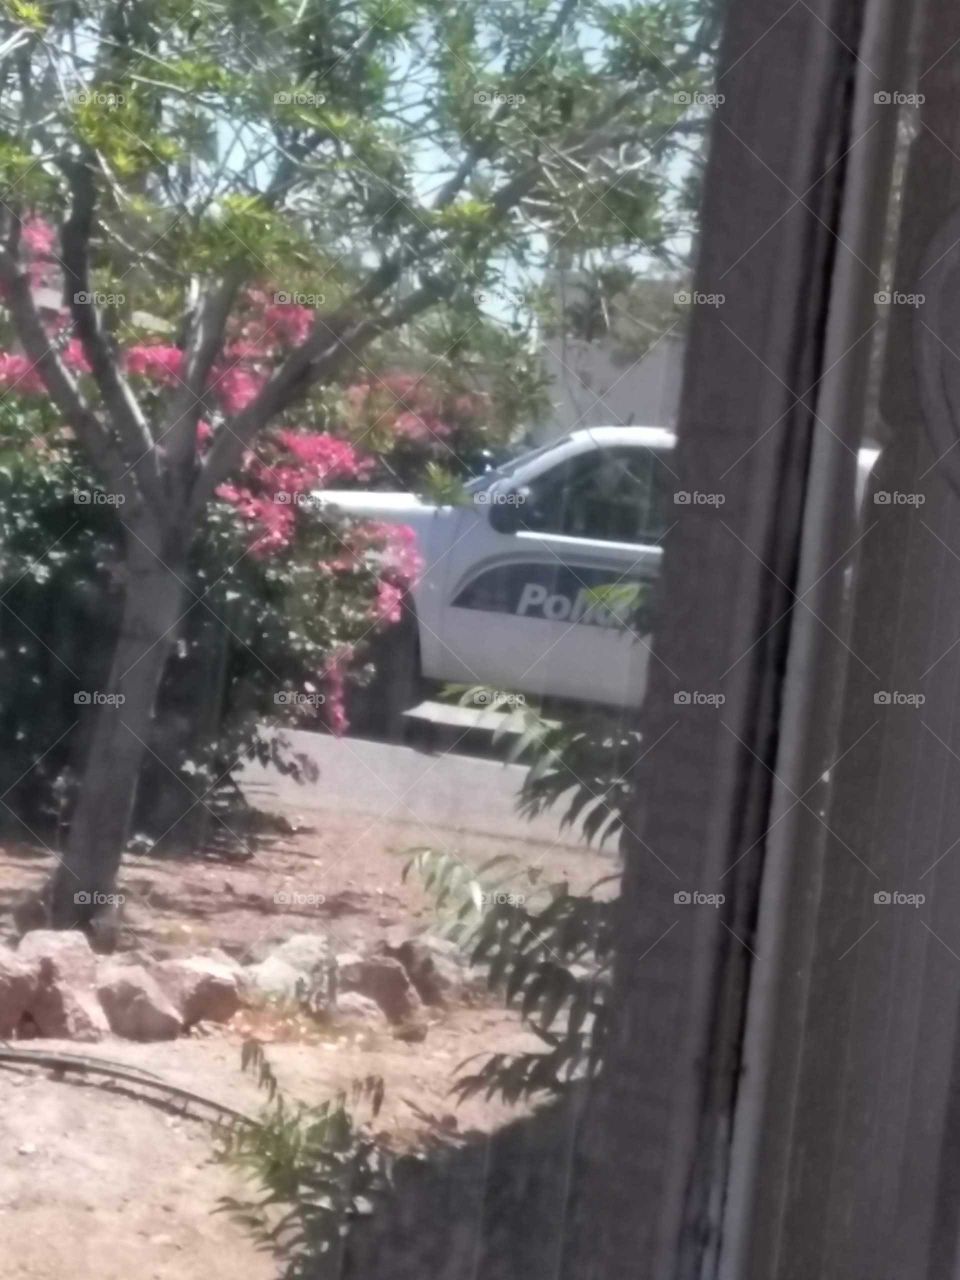 cops in the neighborhood